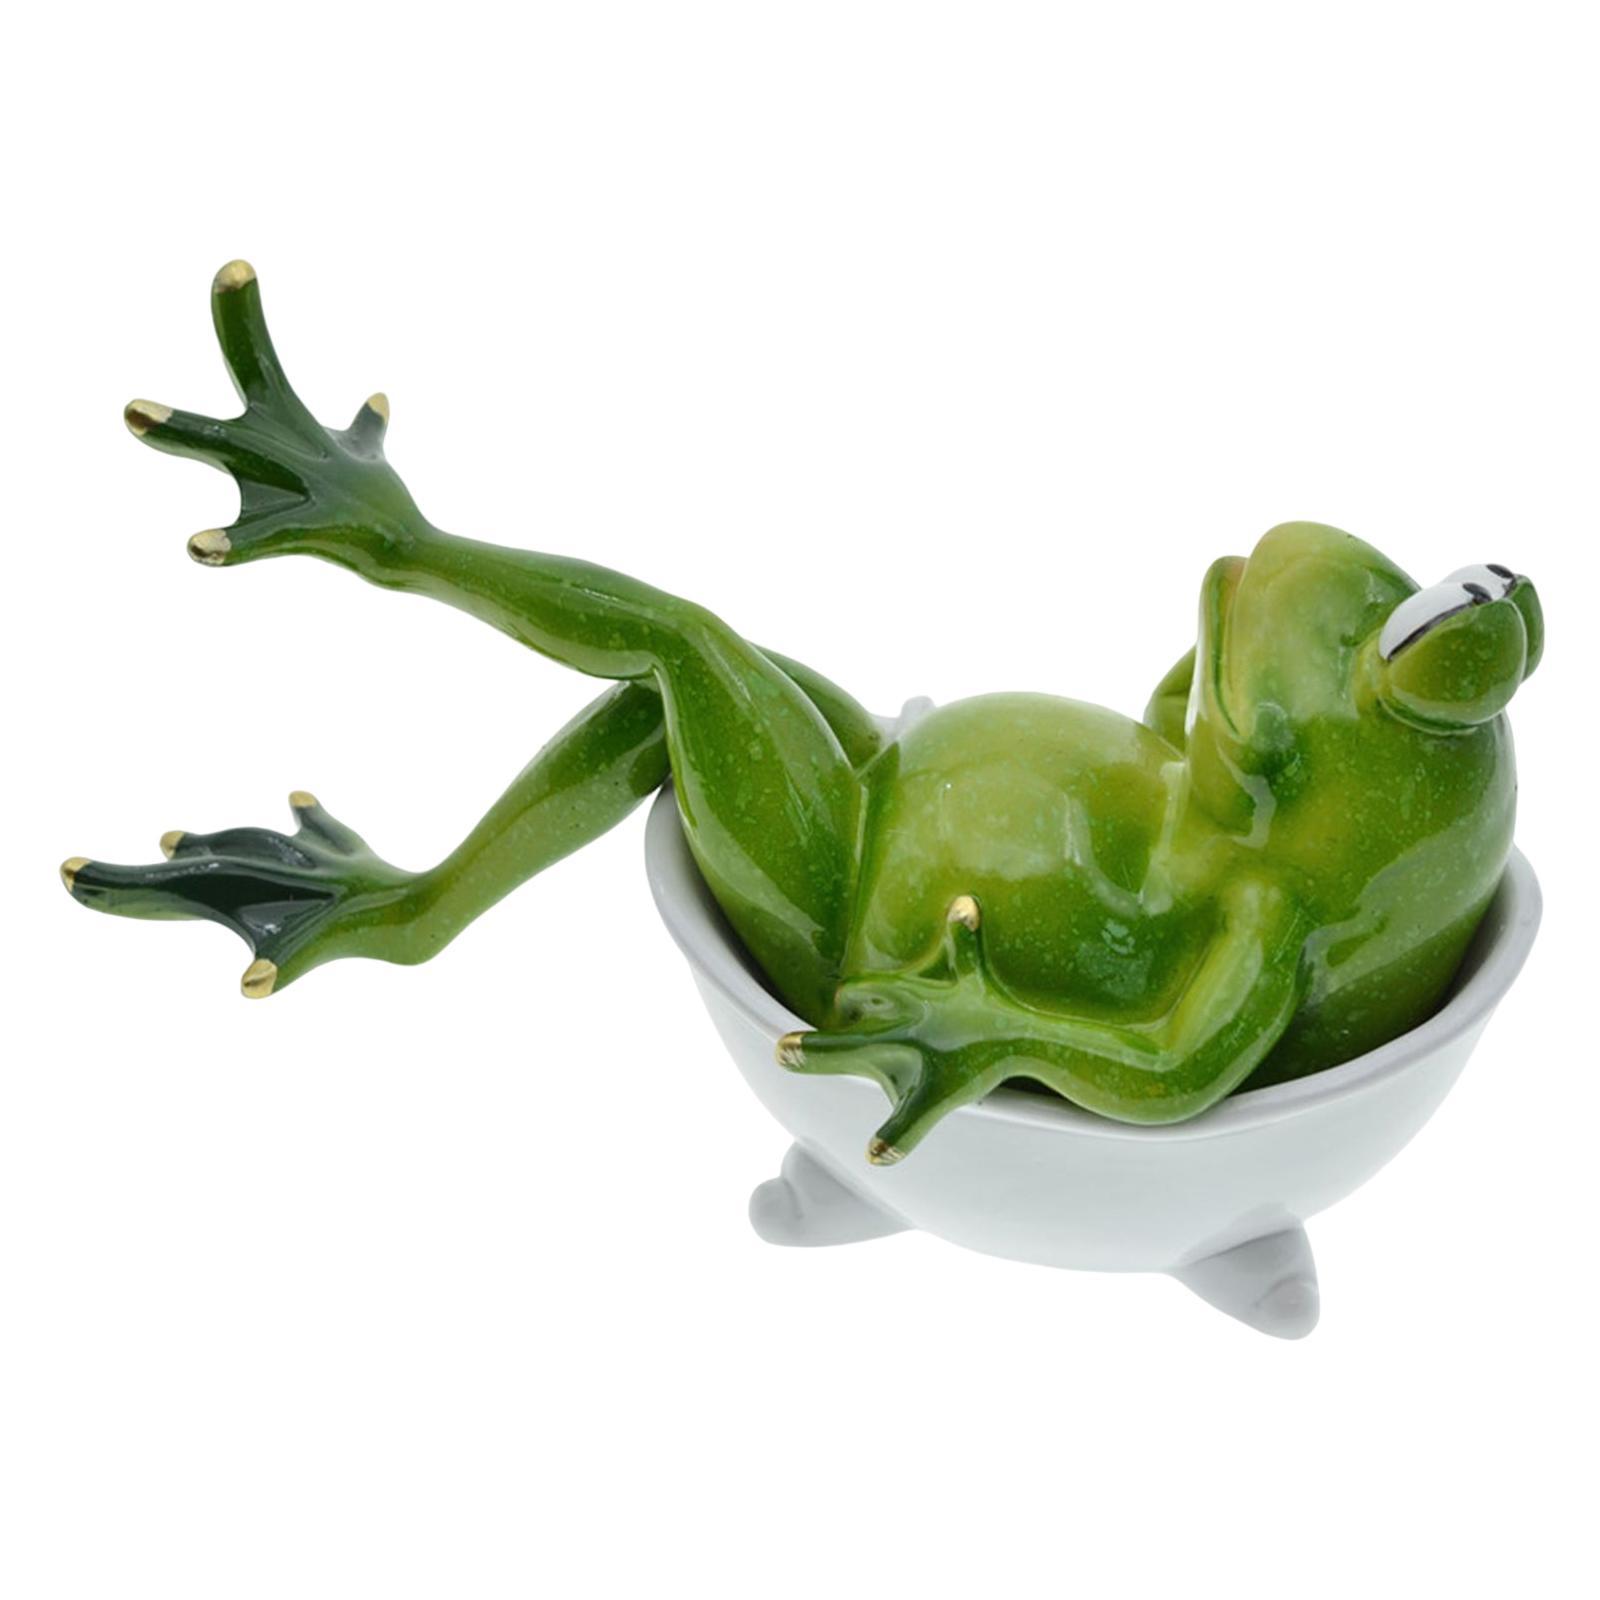 Frog Statue Resin Sculpture Figurine Indoor Home Decorative